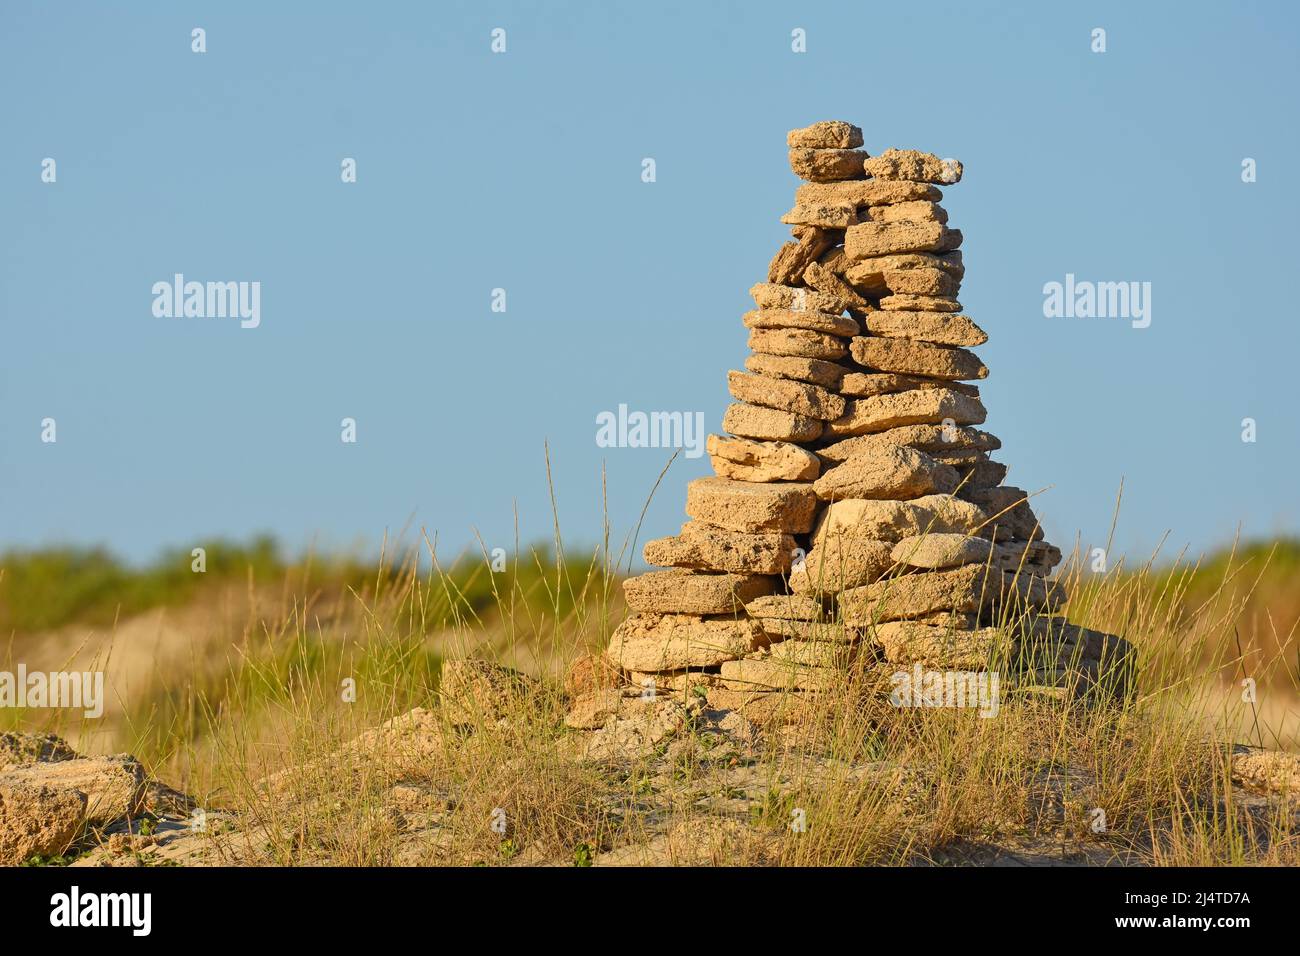 cairn, pile ou pile de pierres faite par l'homme Banque D'Images